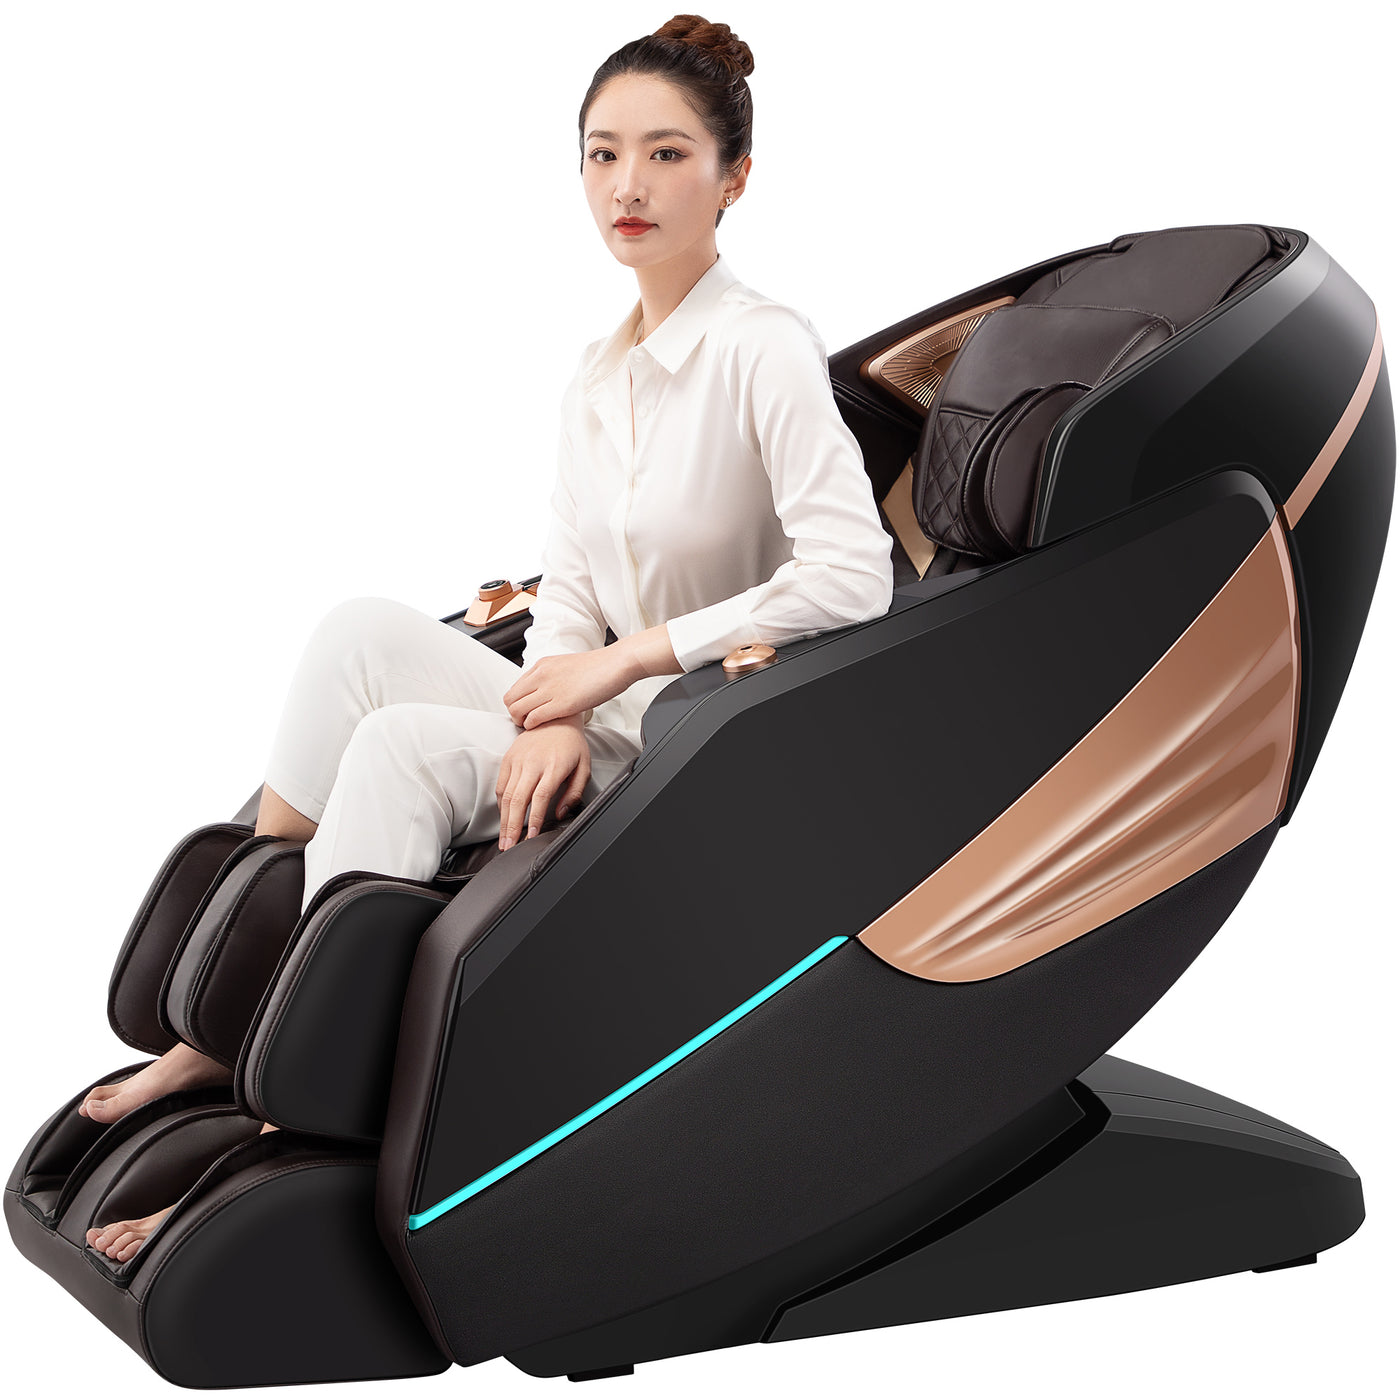 Wellira Massagesessel 3D Frosone mit Frau sitzend #farbe_black